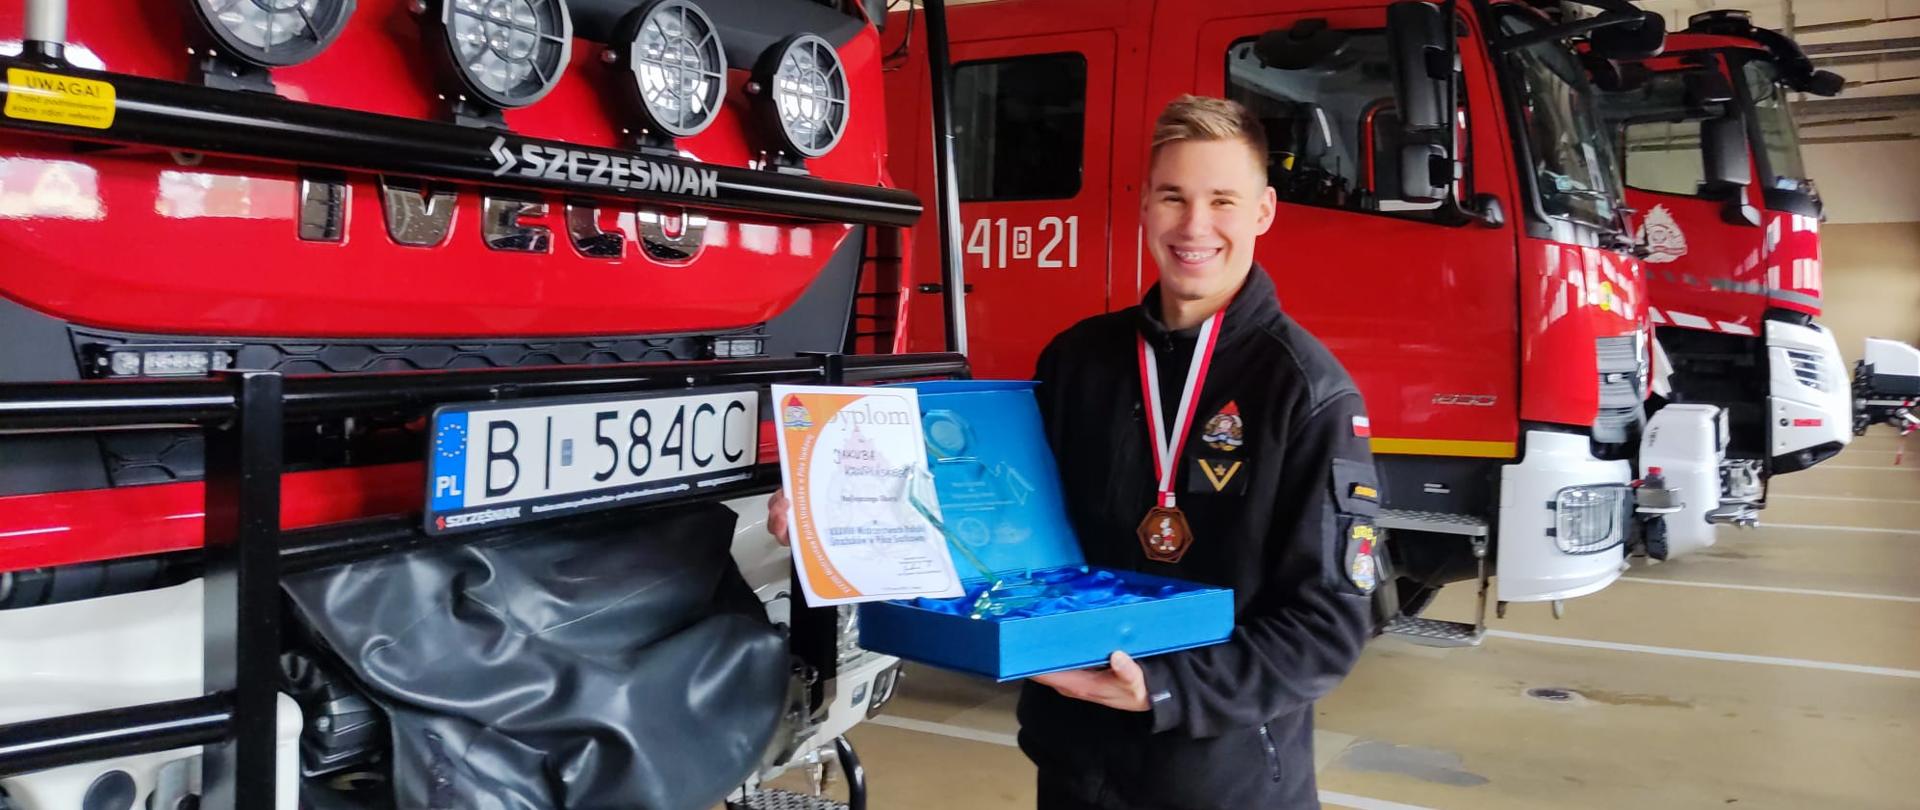 Strażak na tle samochodów pożarniczych z nagrodą za najlepszego libero